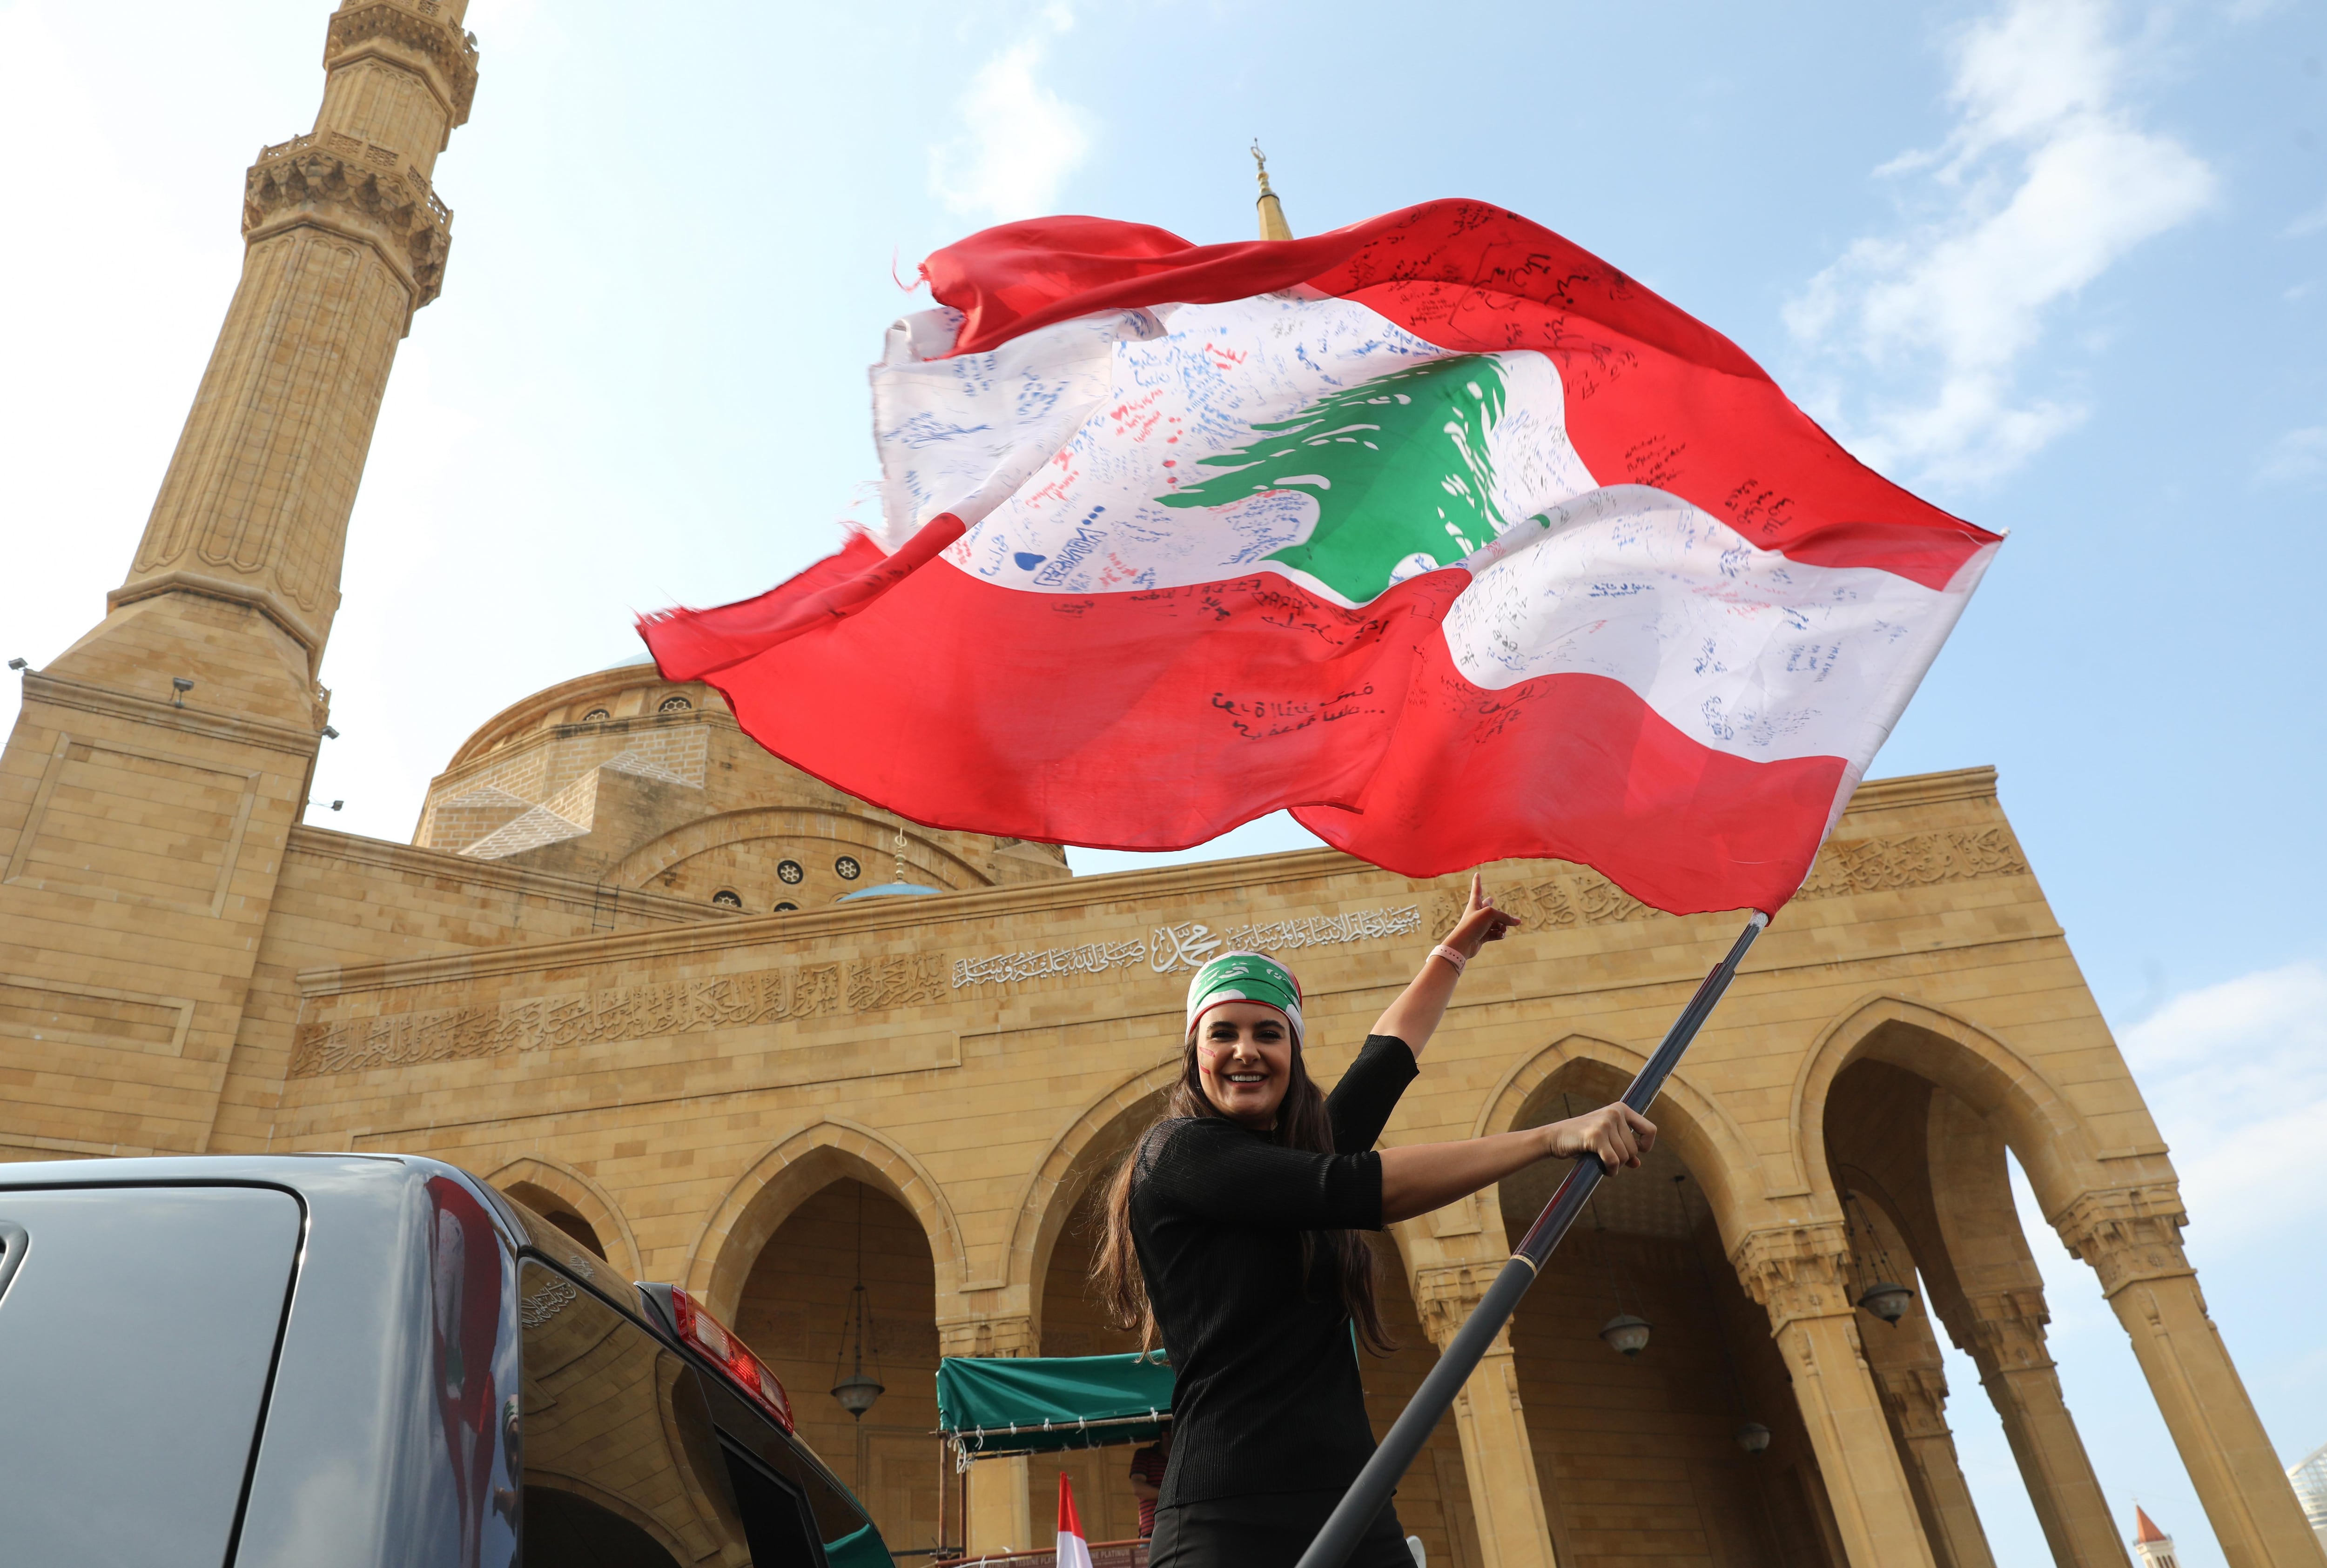 Una manifestante libanesa antigubernamental ondea la bandera nacional mientras se prepara para dirigirse al sur del Líbano en un autobús 'revolucionario' desde el centro de Beiru. (Foto: AFP)